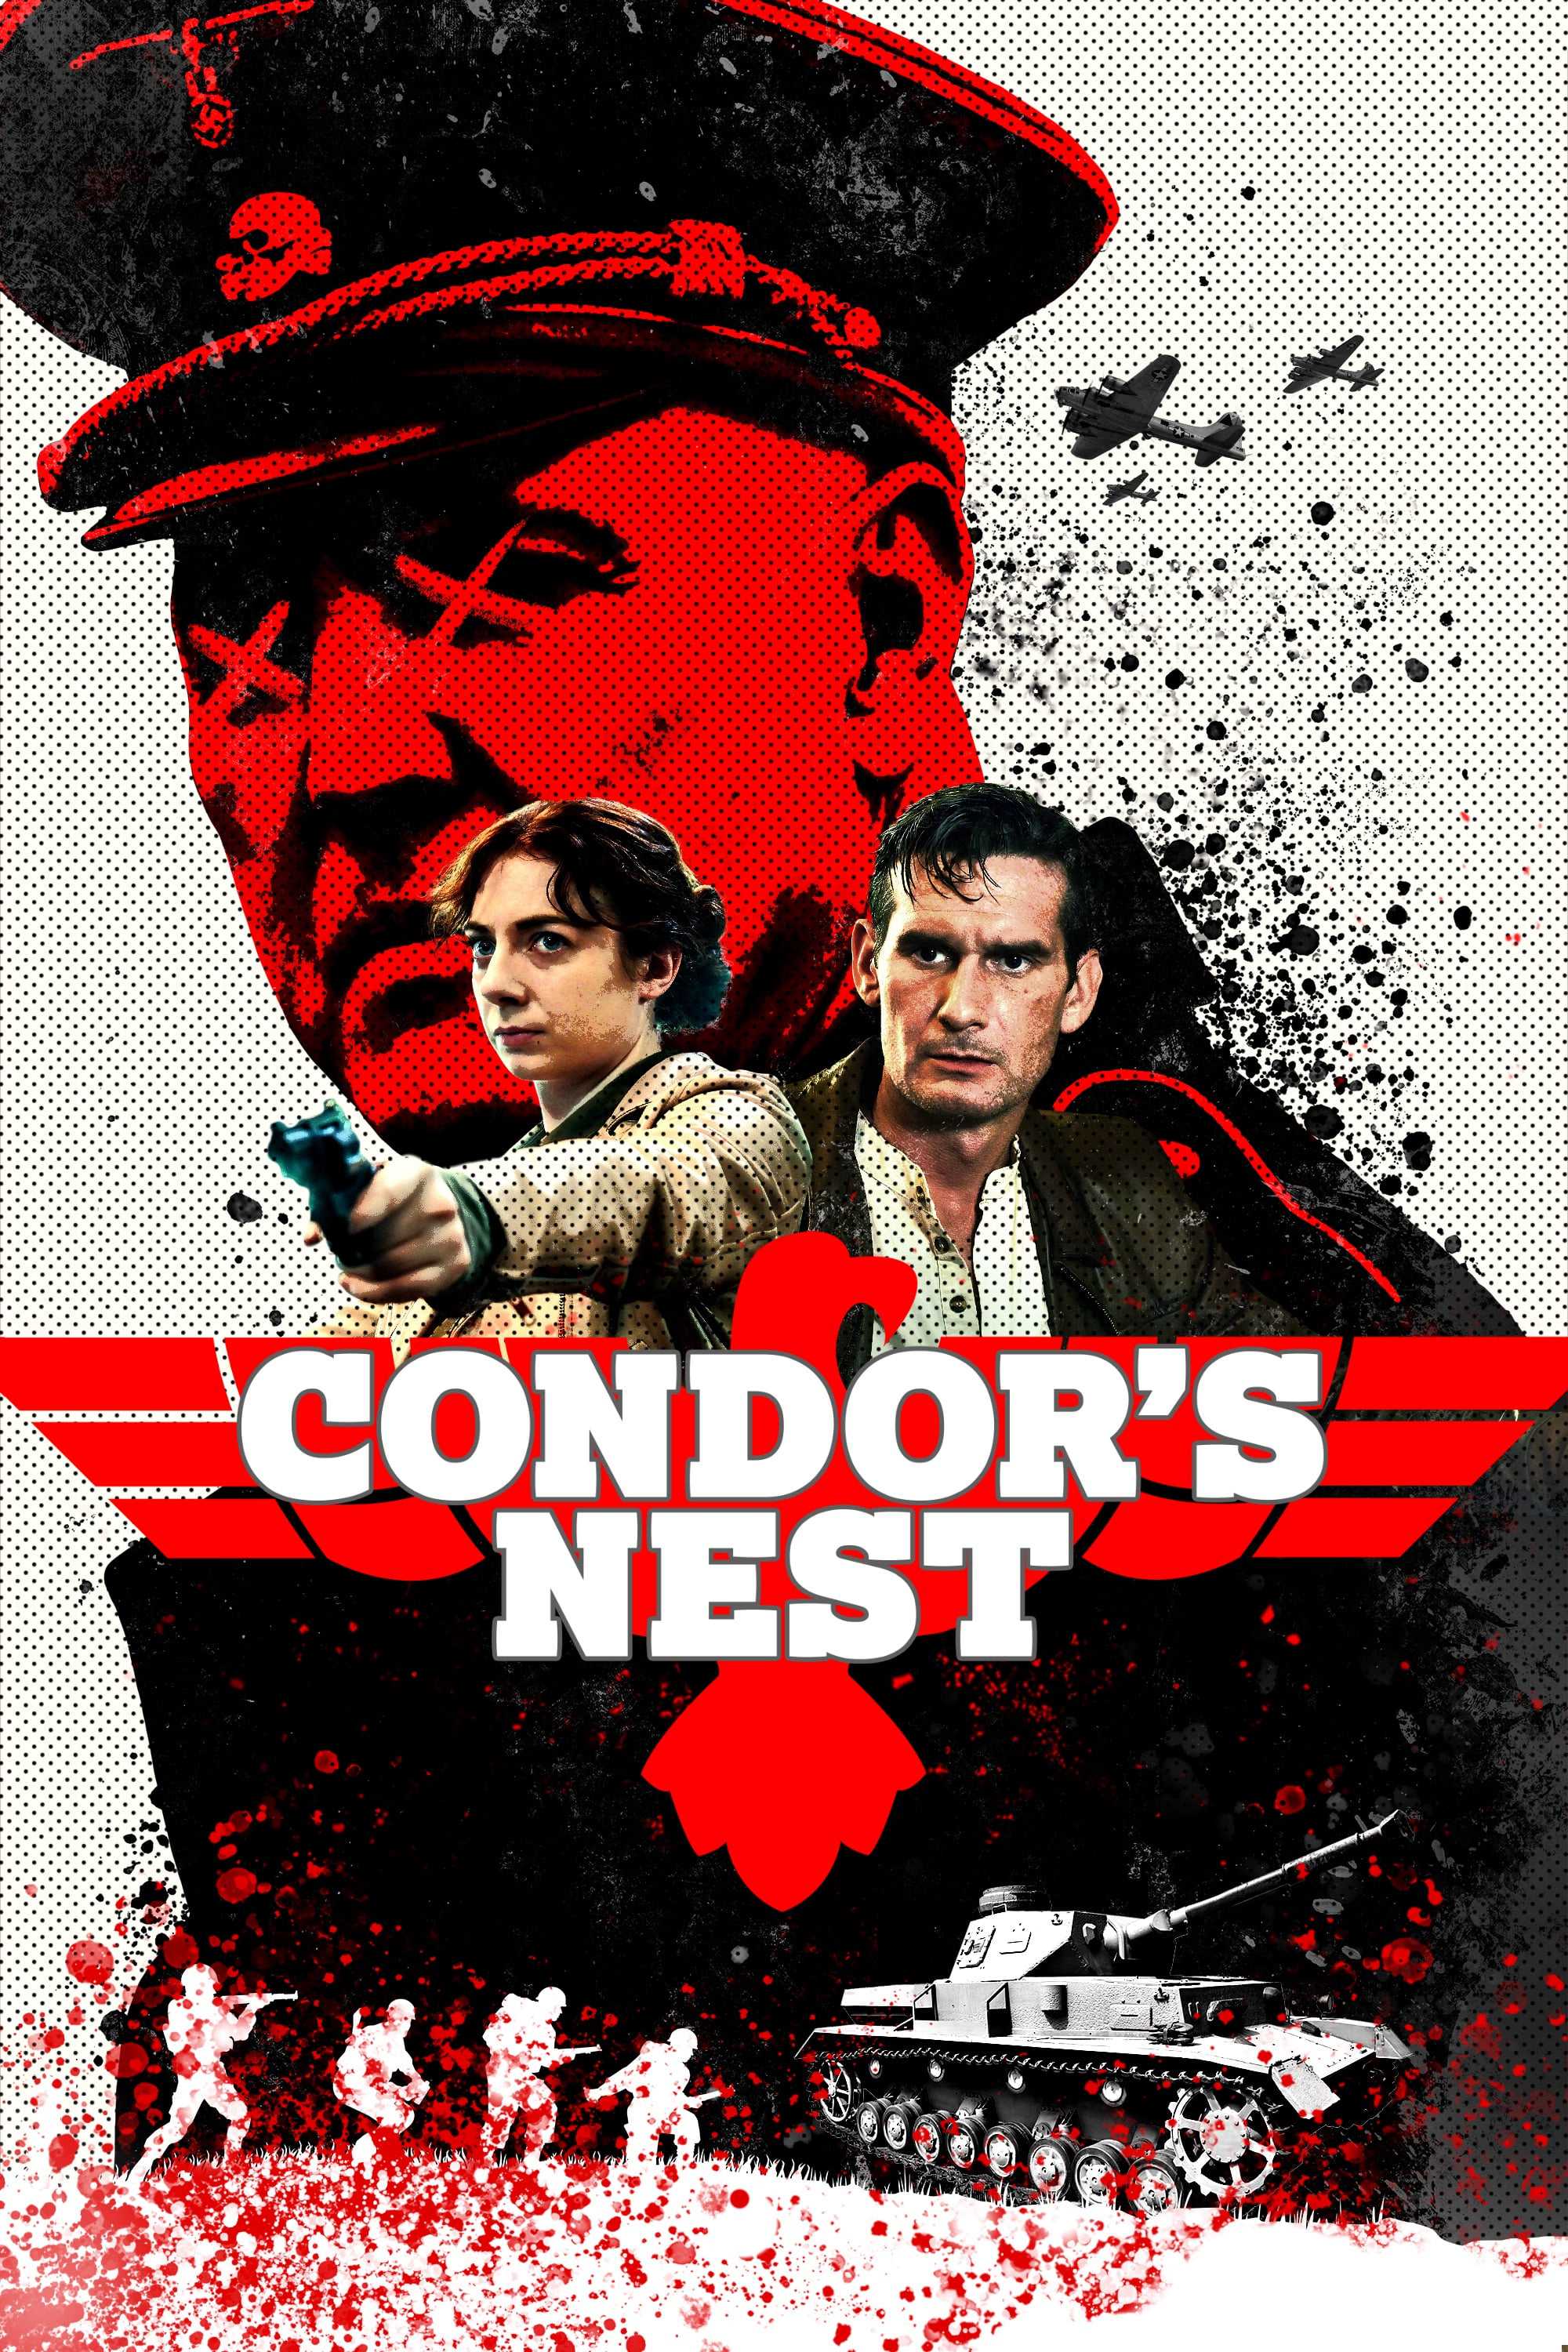 Condor's nest - Condor's nest